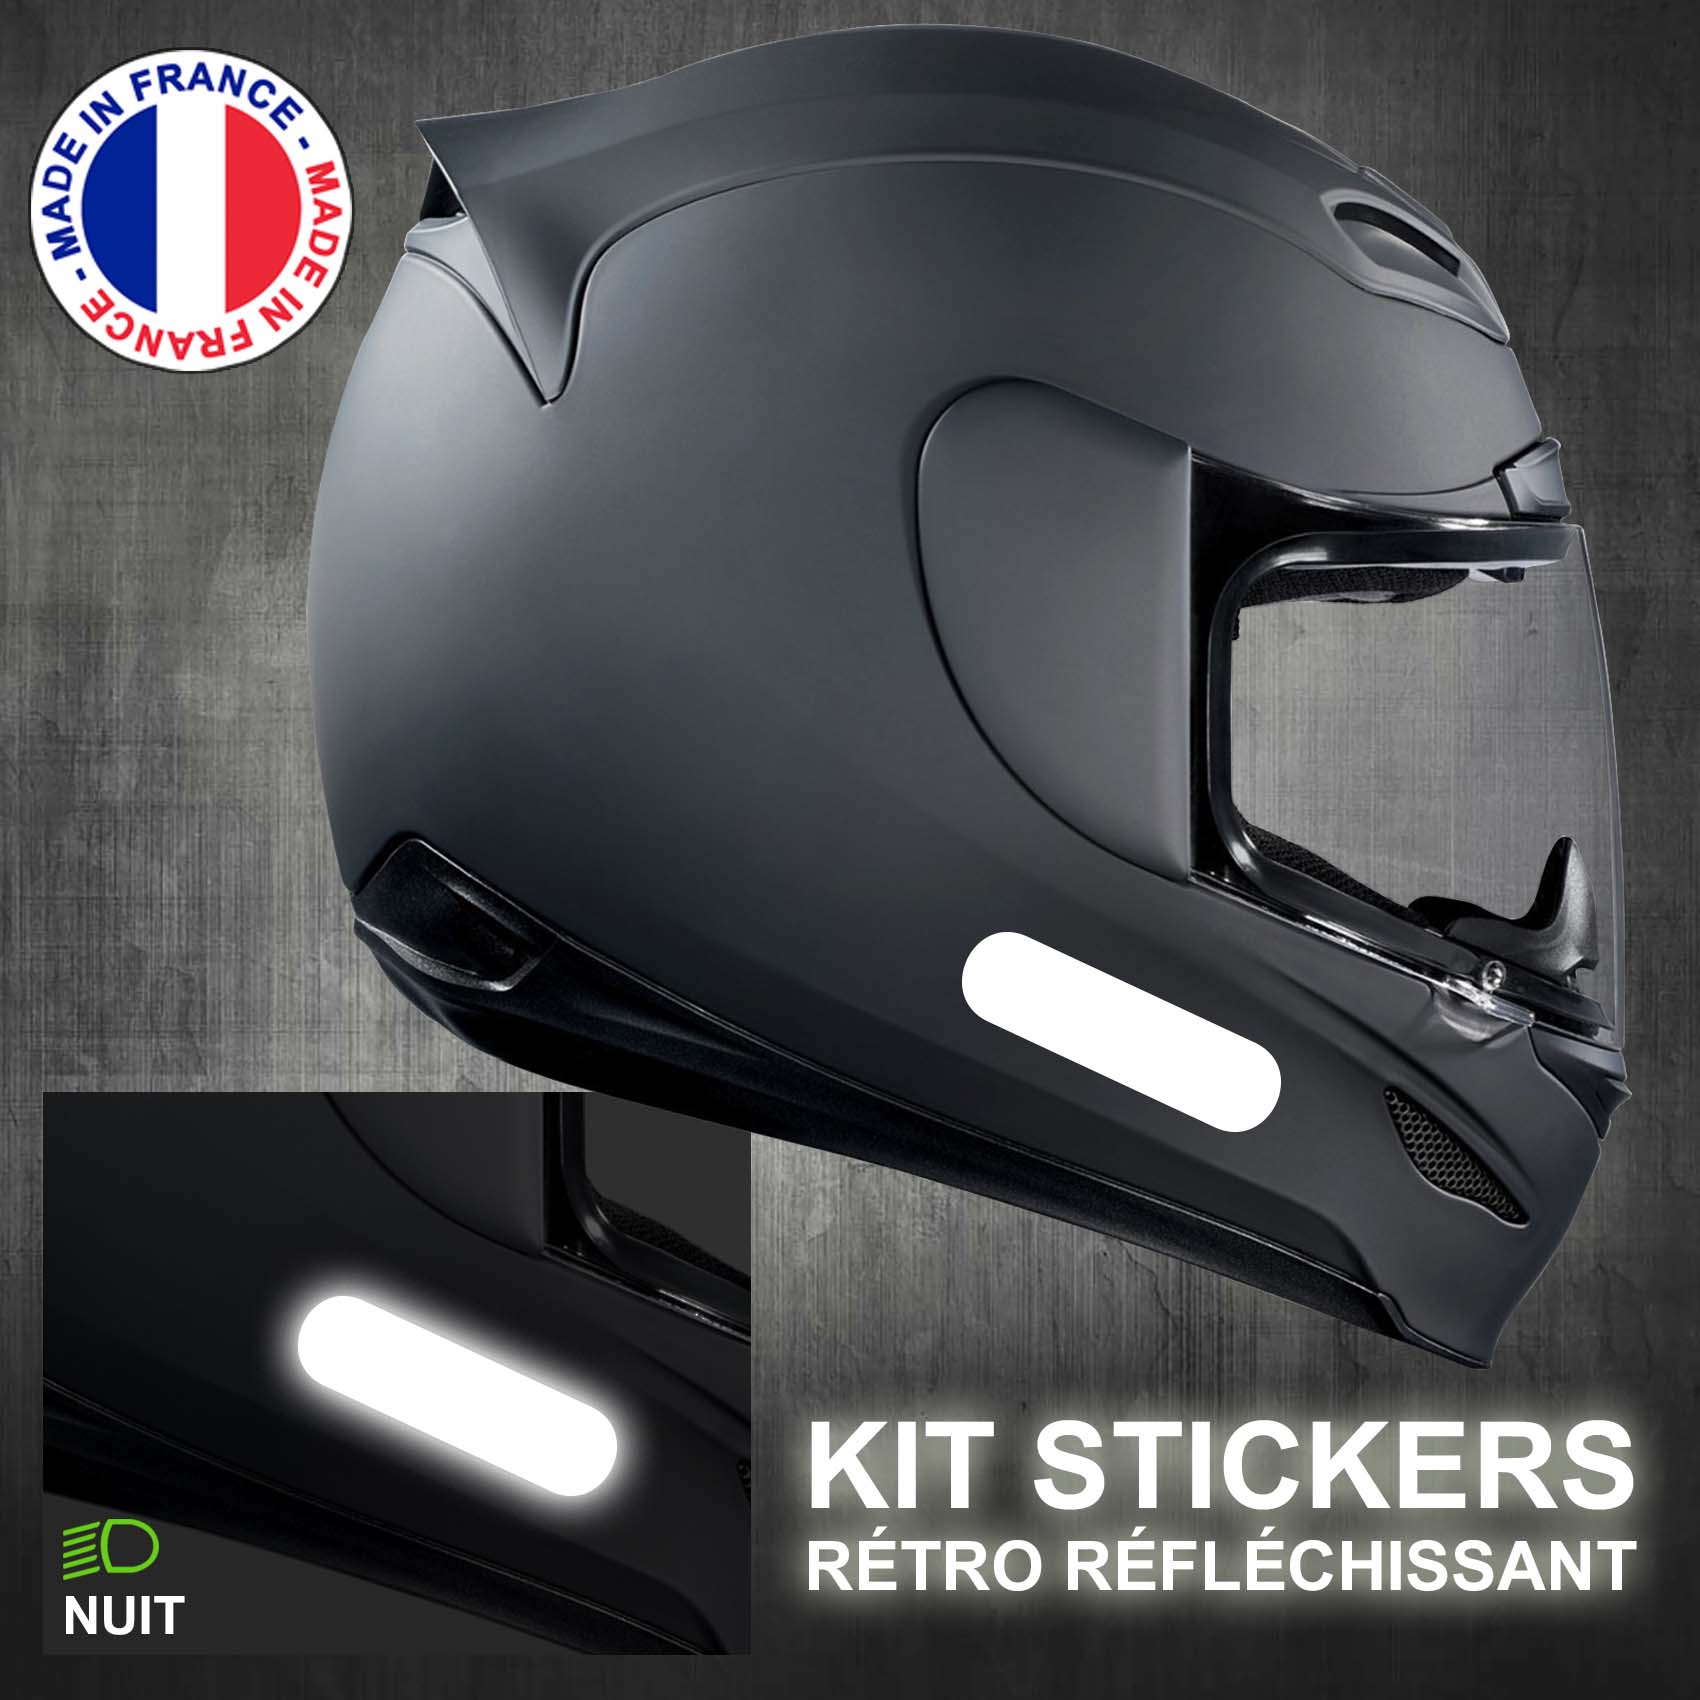 Stickers Reflechissant Blanc - 4 Bandes Standard pour Casque Moto